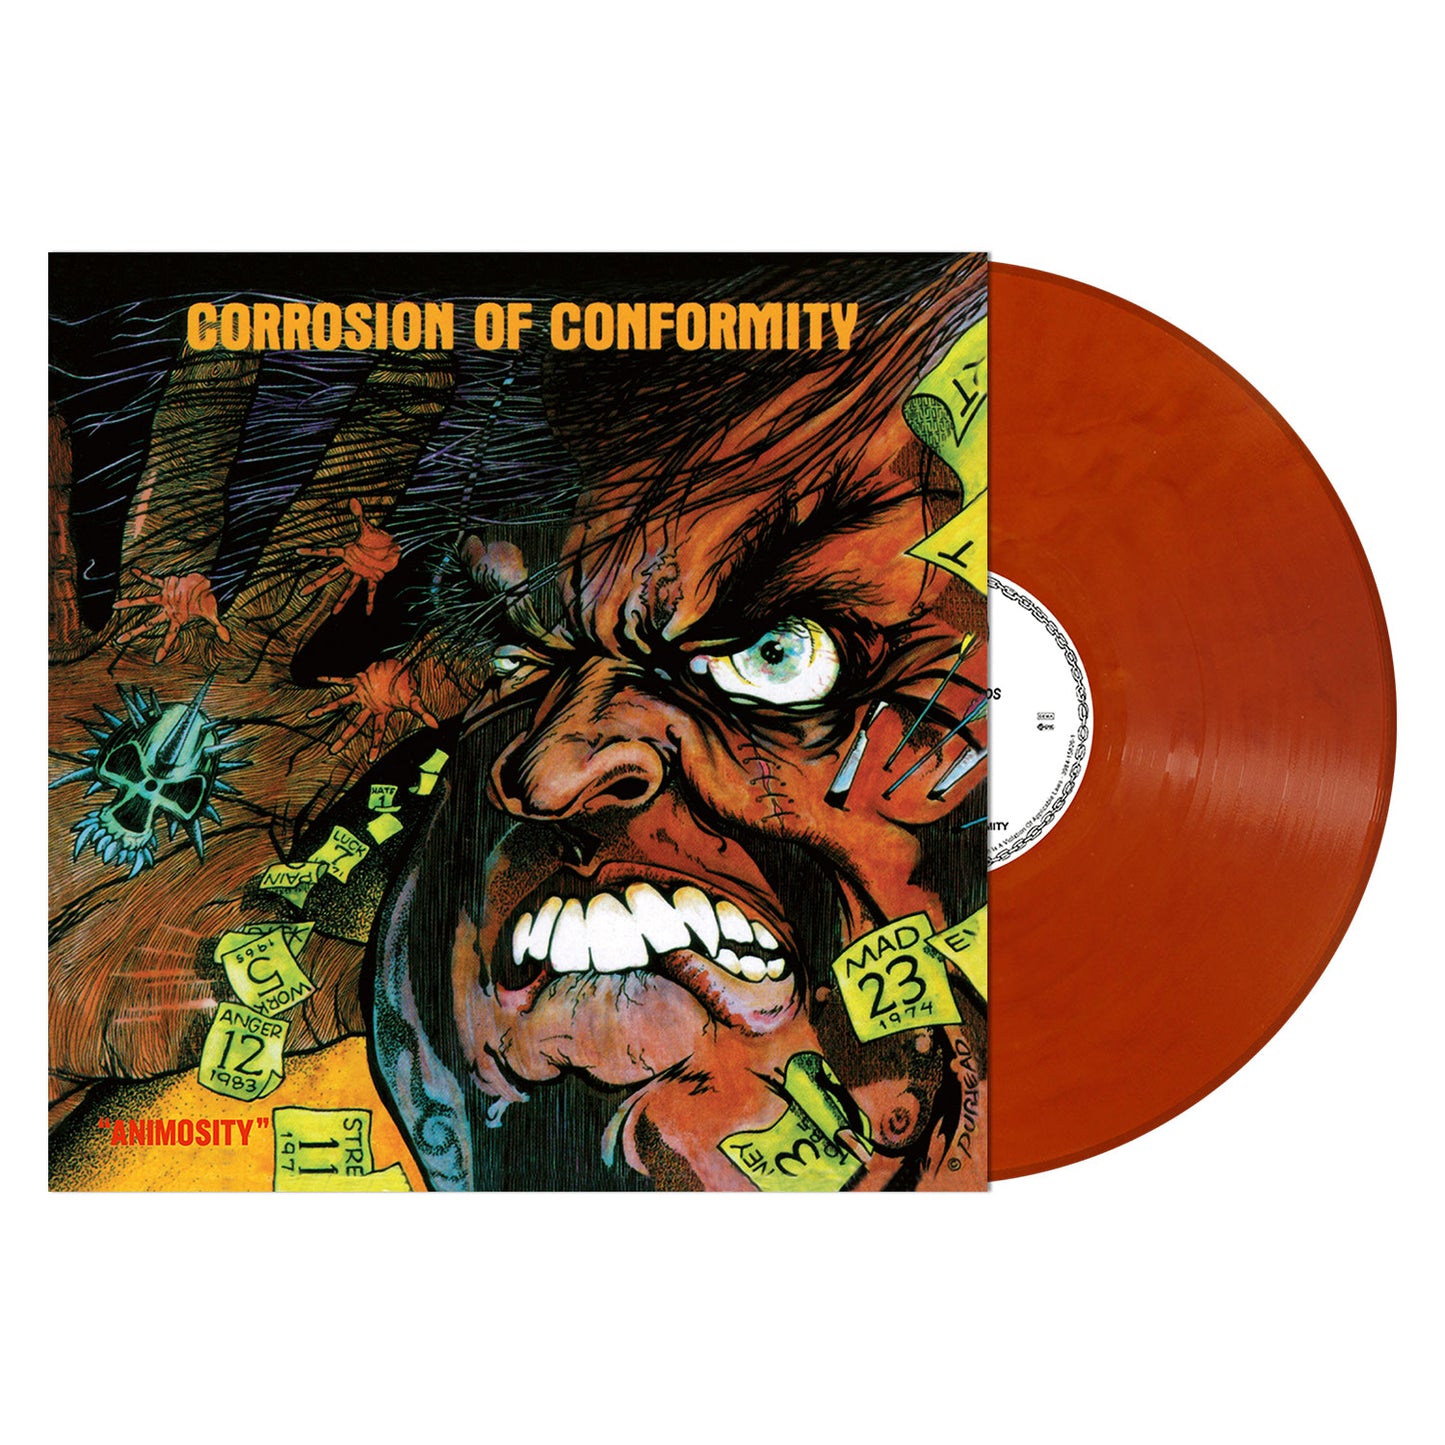 Corrosion Of Conformity "Animosity" LP (ORANGE/BROWN Vinyl)